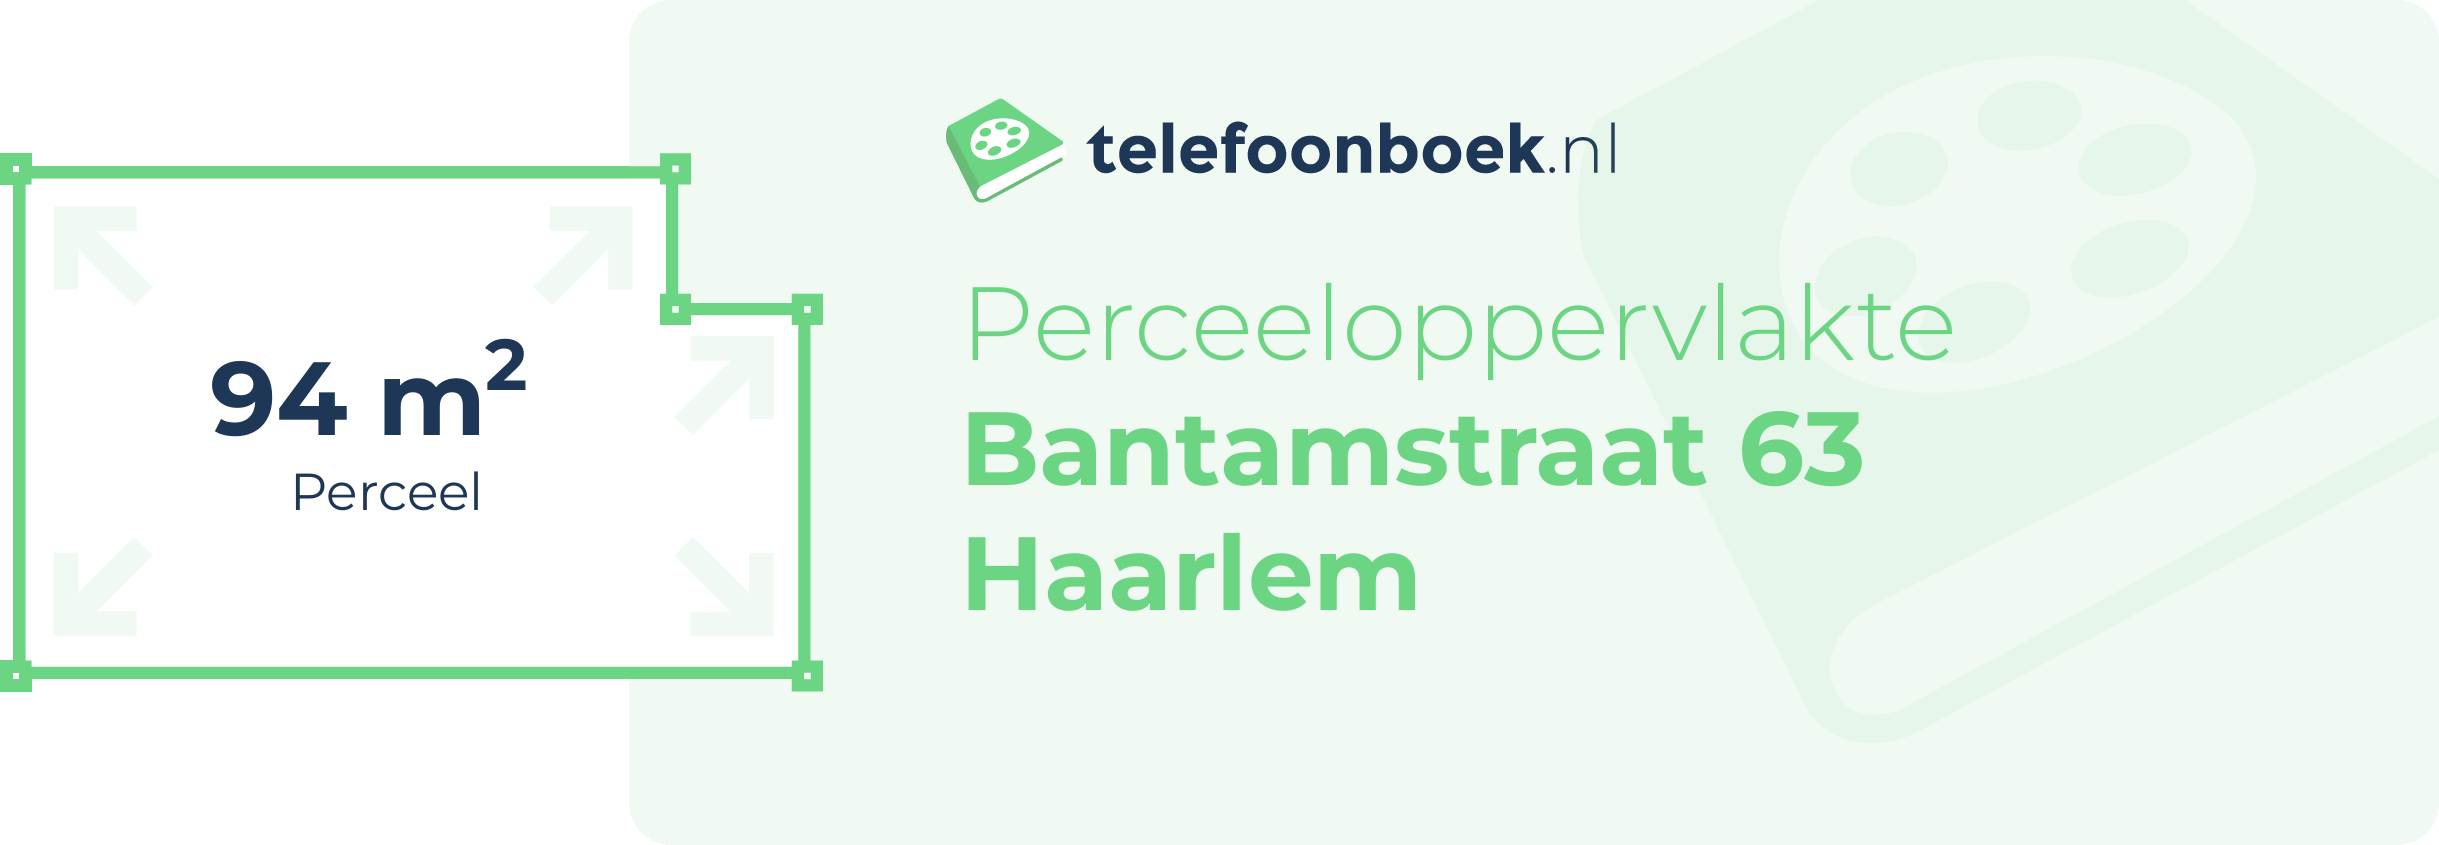 Perceeloppervlakte Bantamstraat 63 Haarlem